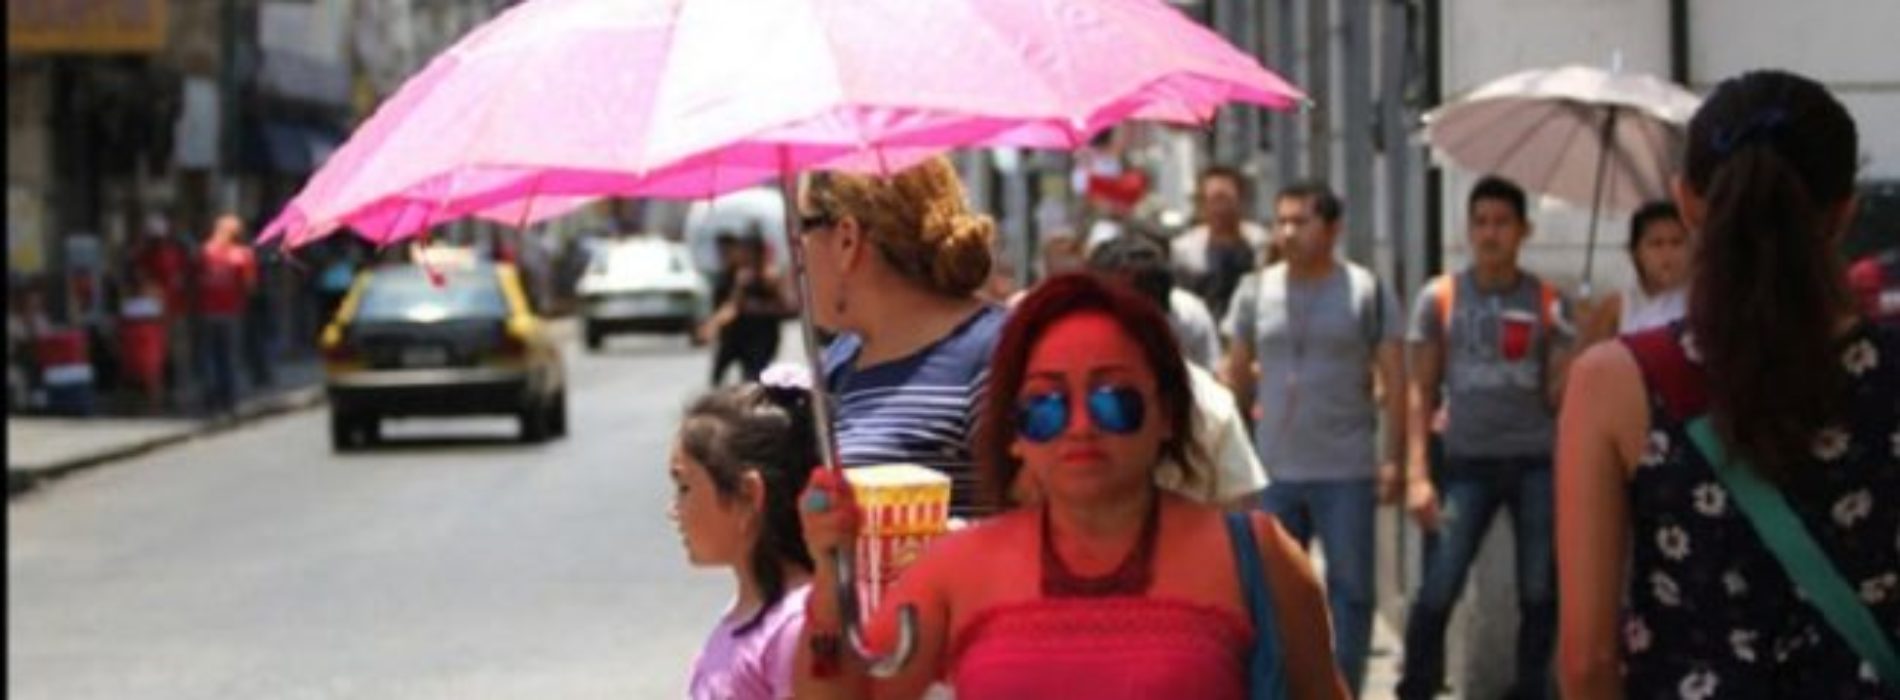 Llaman a prevenir enfermedades ante temporada de calor en
Oaxaca